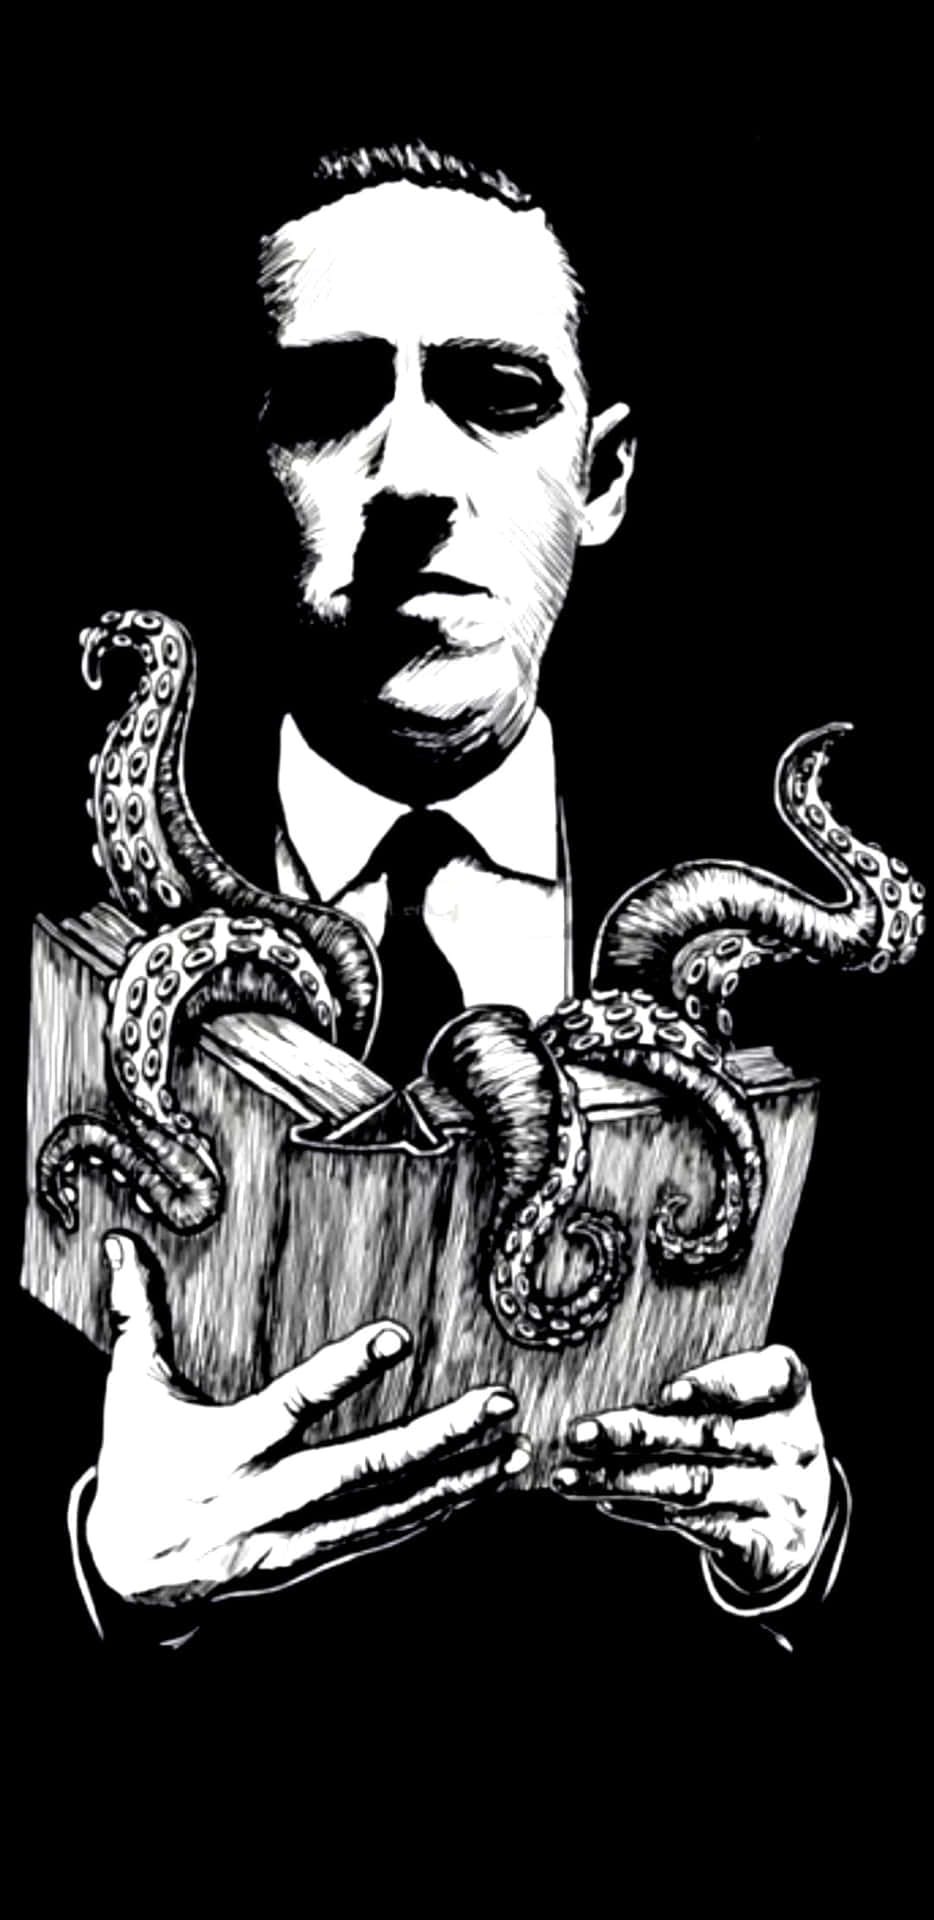 Klivin I Den Mardrömslika Världen Av H.p. Lovecraft